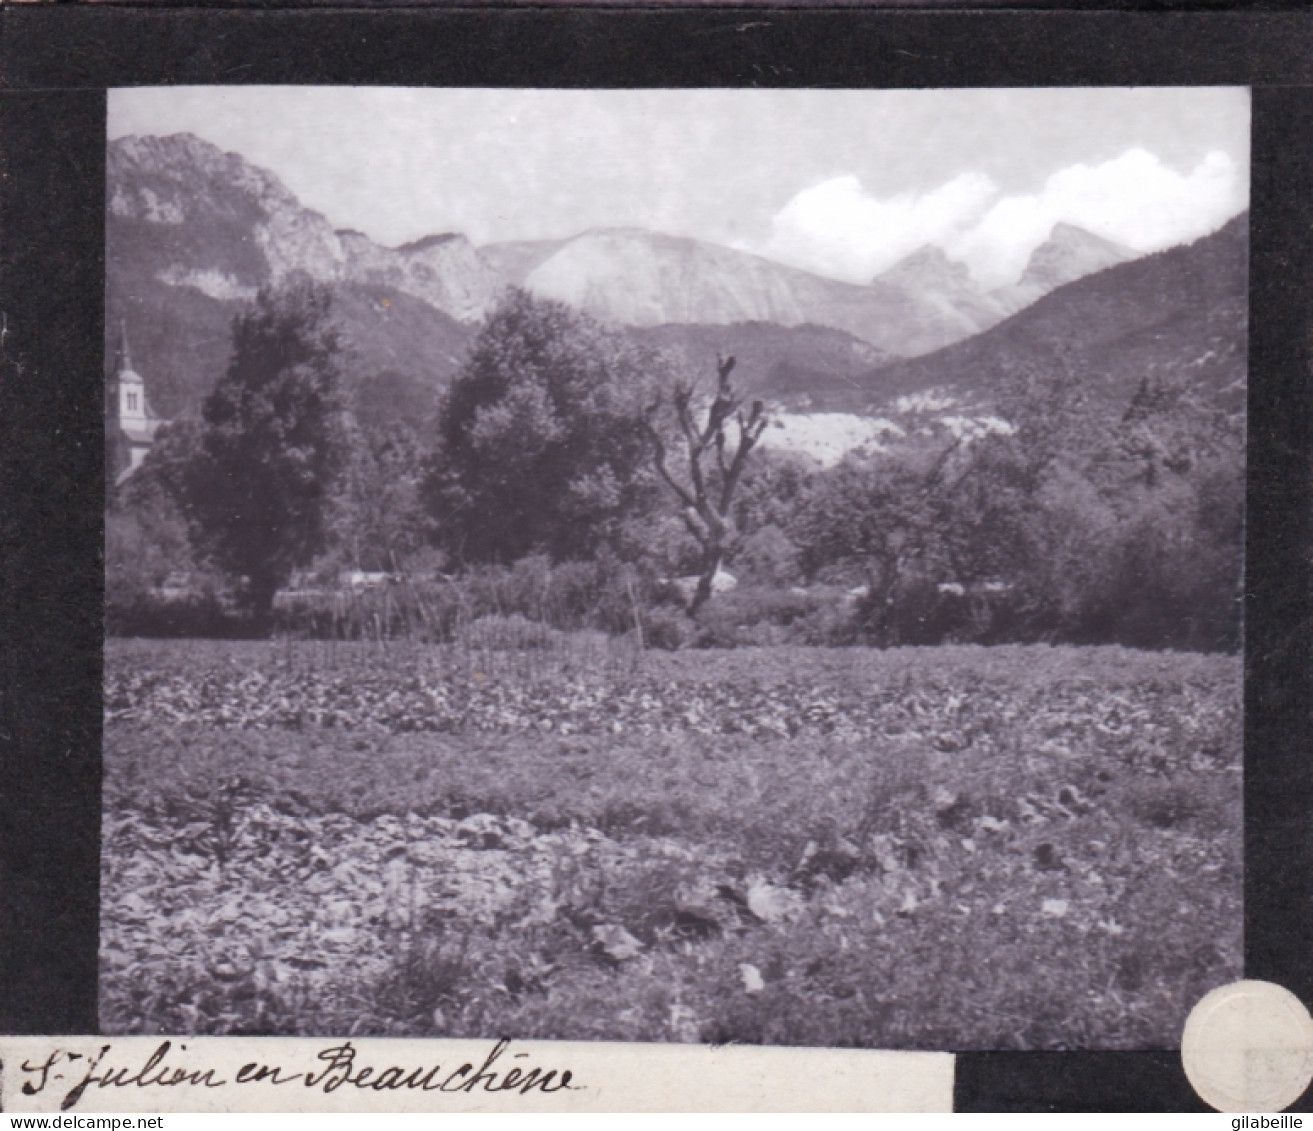 PLAQUE DE VERRE -  Photo - 05 - Hautes Alpes - SAINT JULIEN En BEAUCHENE-  Année 1890 - Plaques De Verre